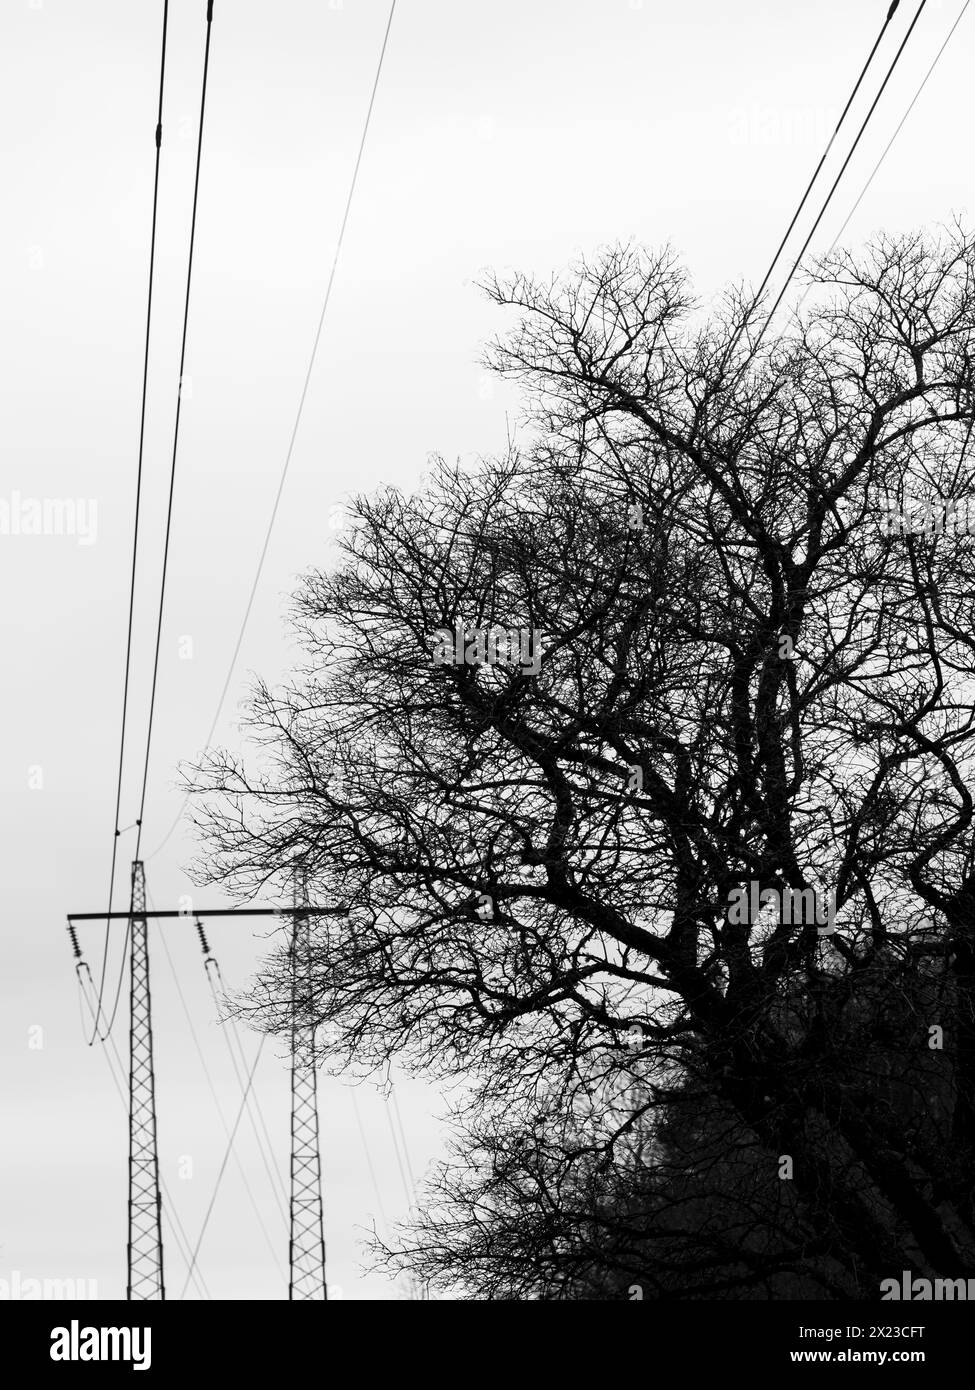 Una scena in bianco e nero che mostra alte linee elettriche che tagliano attraverso un boschetto di alberi. Il contrasto tra le strutture artificiali e la natura degli elem Foto Stock